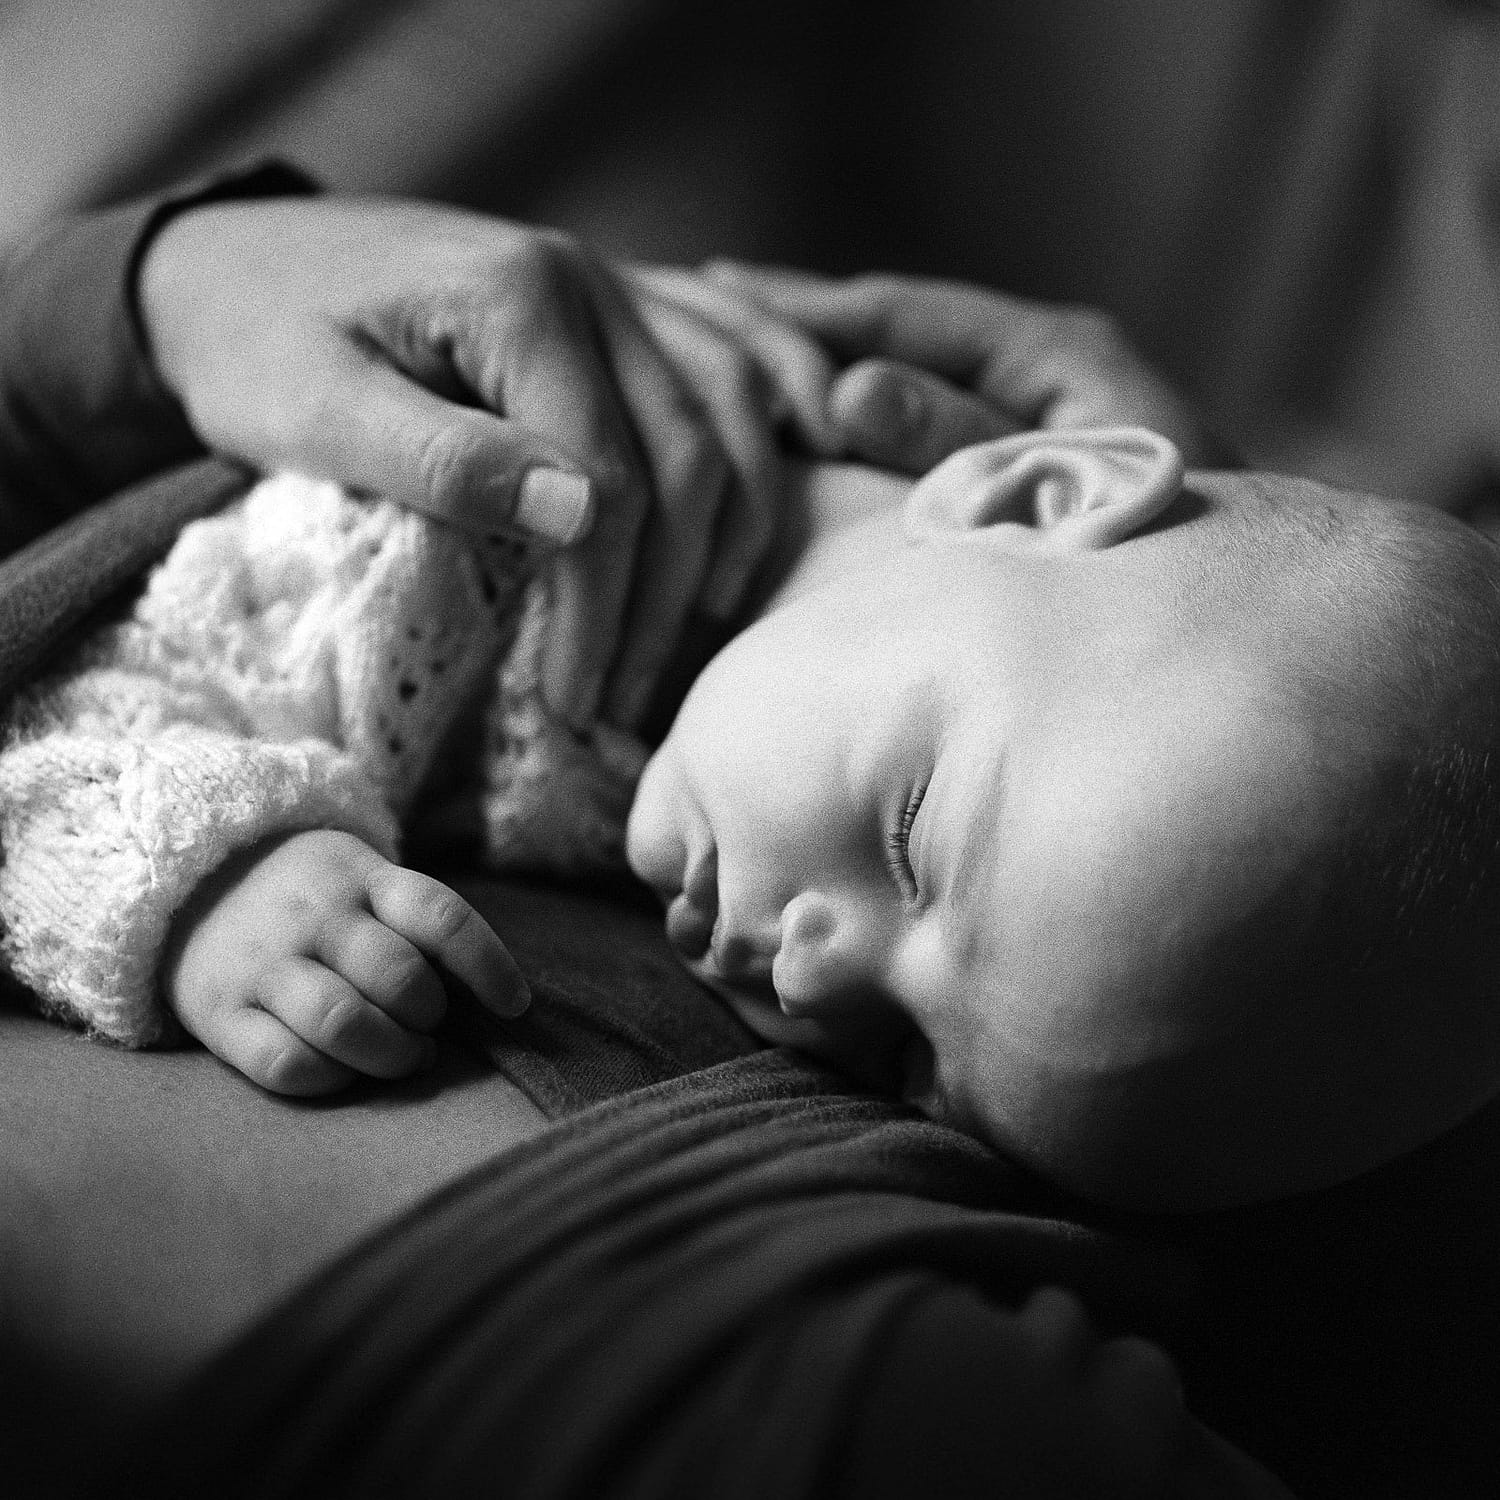 Baby Fotoshooting zuhause bei Tageslicht in Hamburg-Altona mit schlafenden Baby im Tragetuch